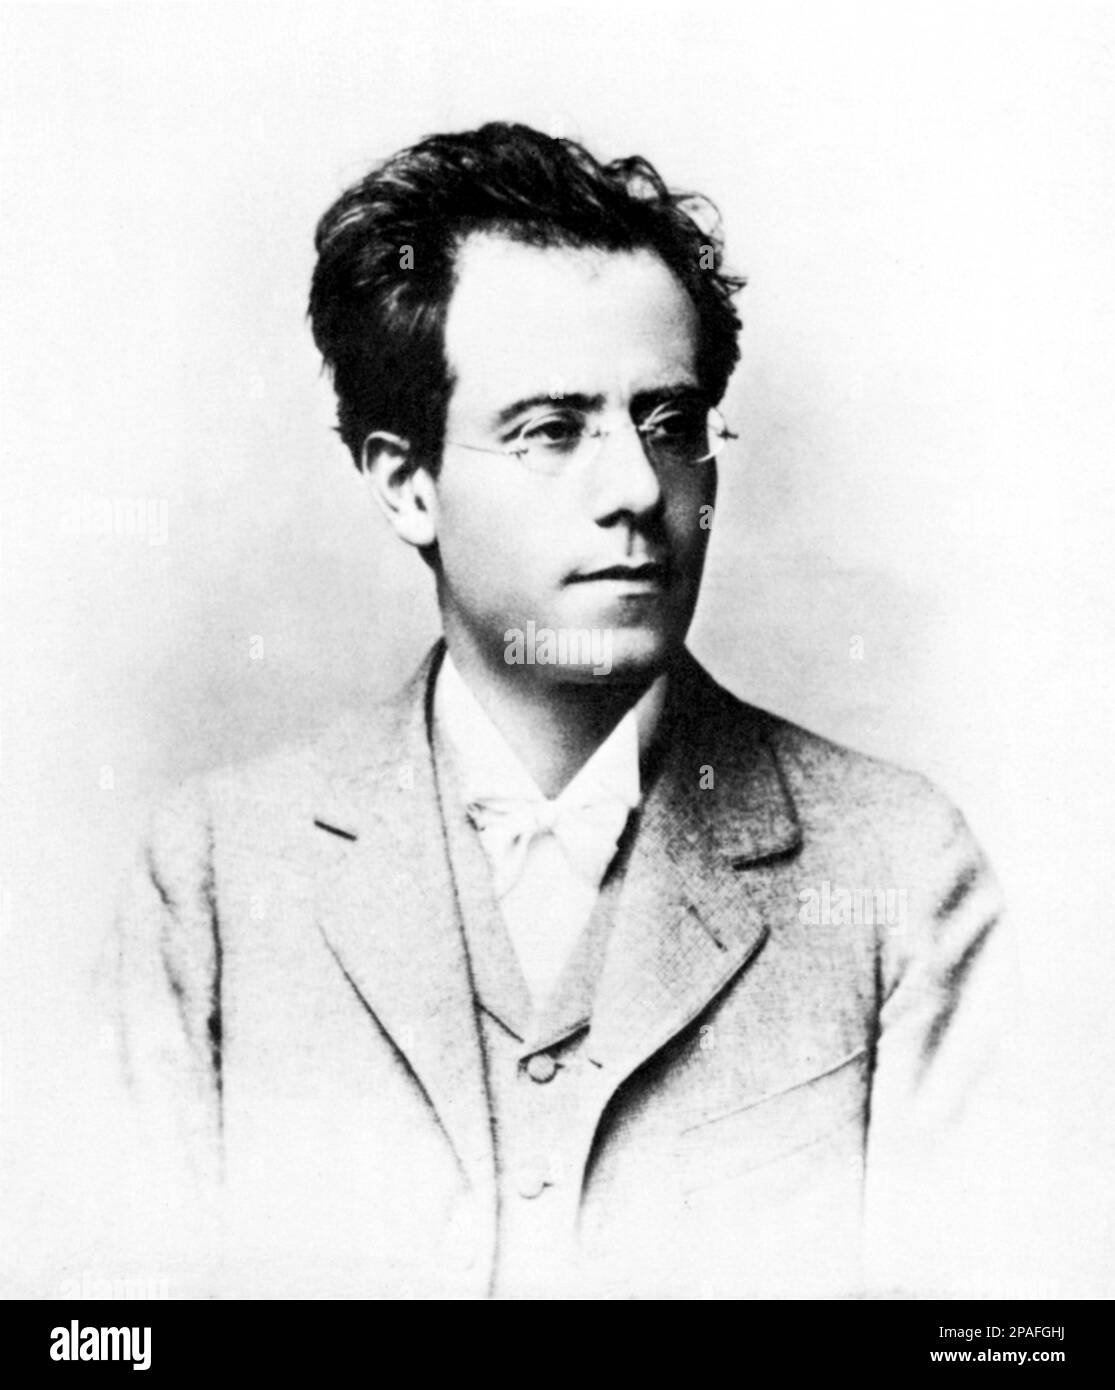 Der österreichische Musikkomponist GUSTAV MAHLER ( 1860 - 1911 ) . Er gilt als Komponist des höchsten Ranges für seine neun Symphonien , seine Lieder usw. Er wurde in seinem Leben als Operndirigent gefeiert - MUSICA CLASSICA - KLASSISCH - COMPOSITORE - MUSICISTA - Portrait - Rituto - Occhiali - Linse - papillon - Krawatte - Cravatta --- ARCHIVIO GBB Stockfoto